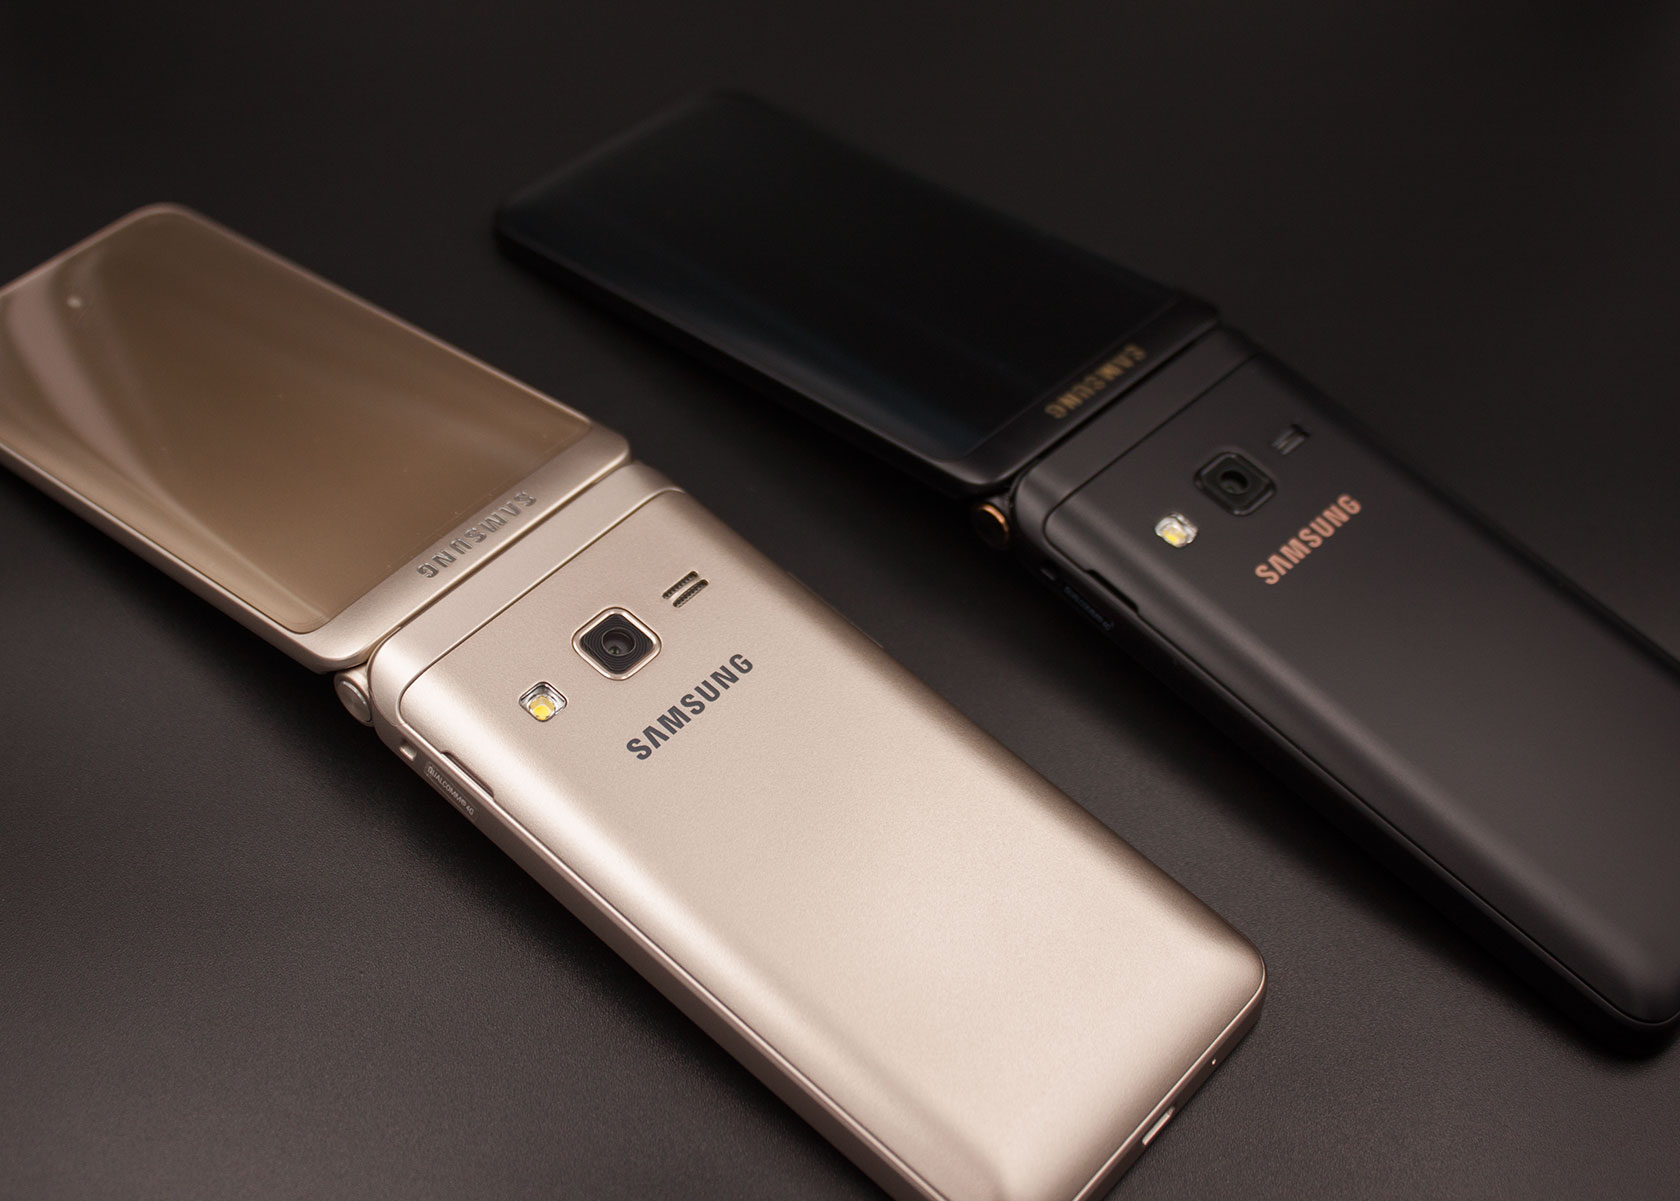 Samsung Galaxy Folder 2 G1650